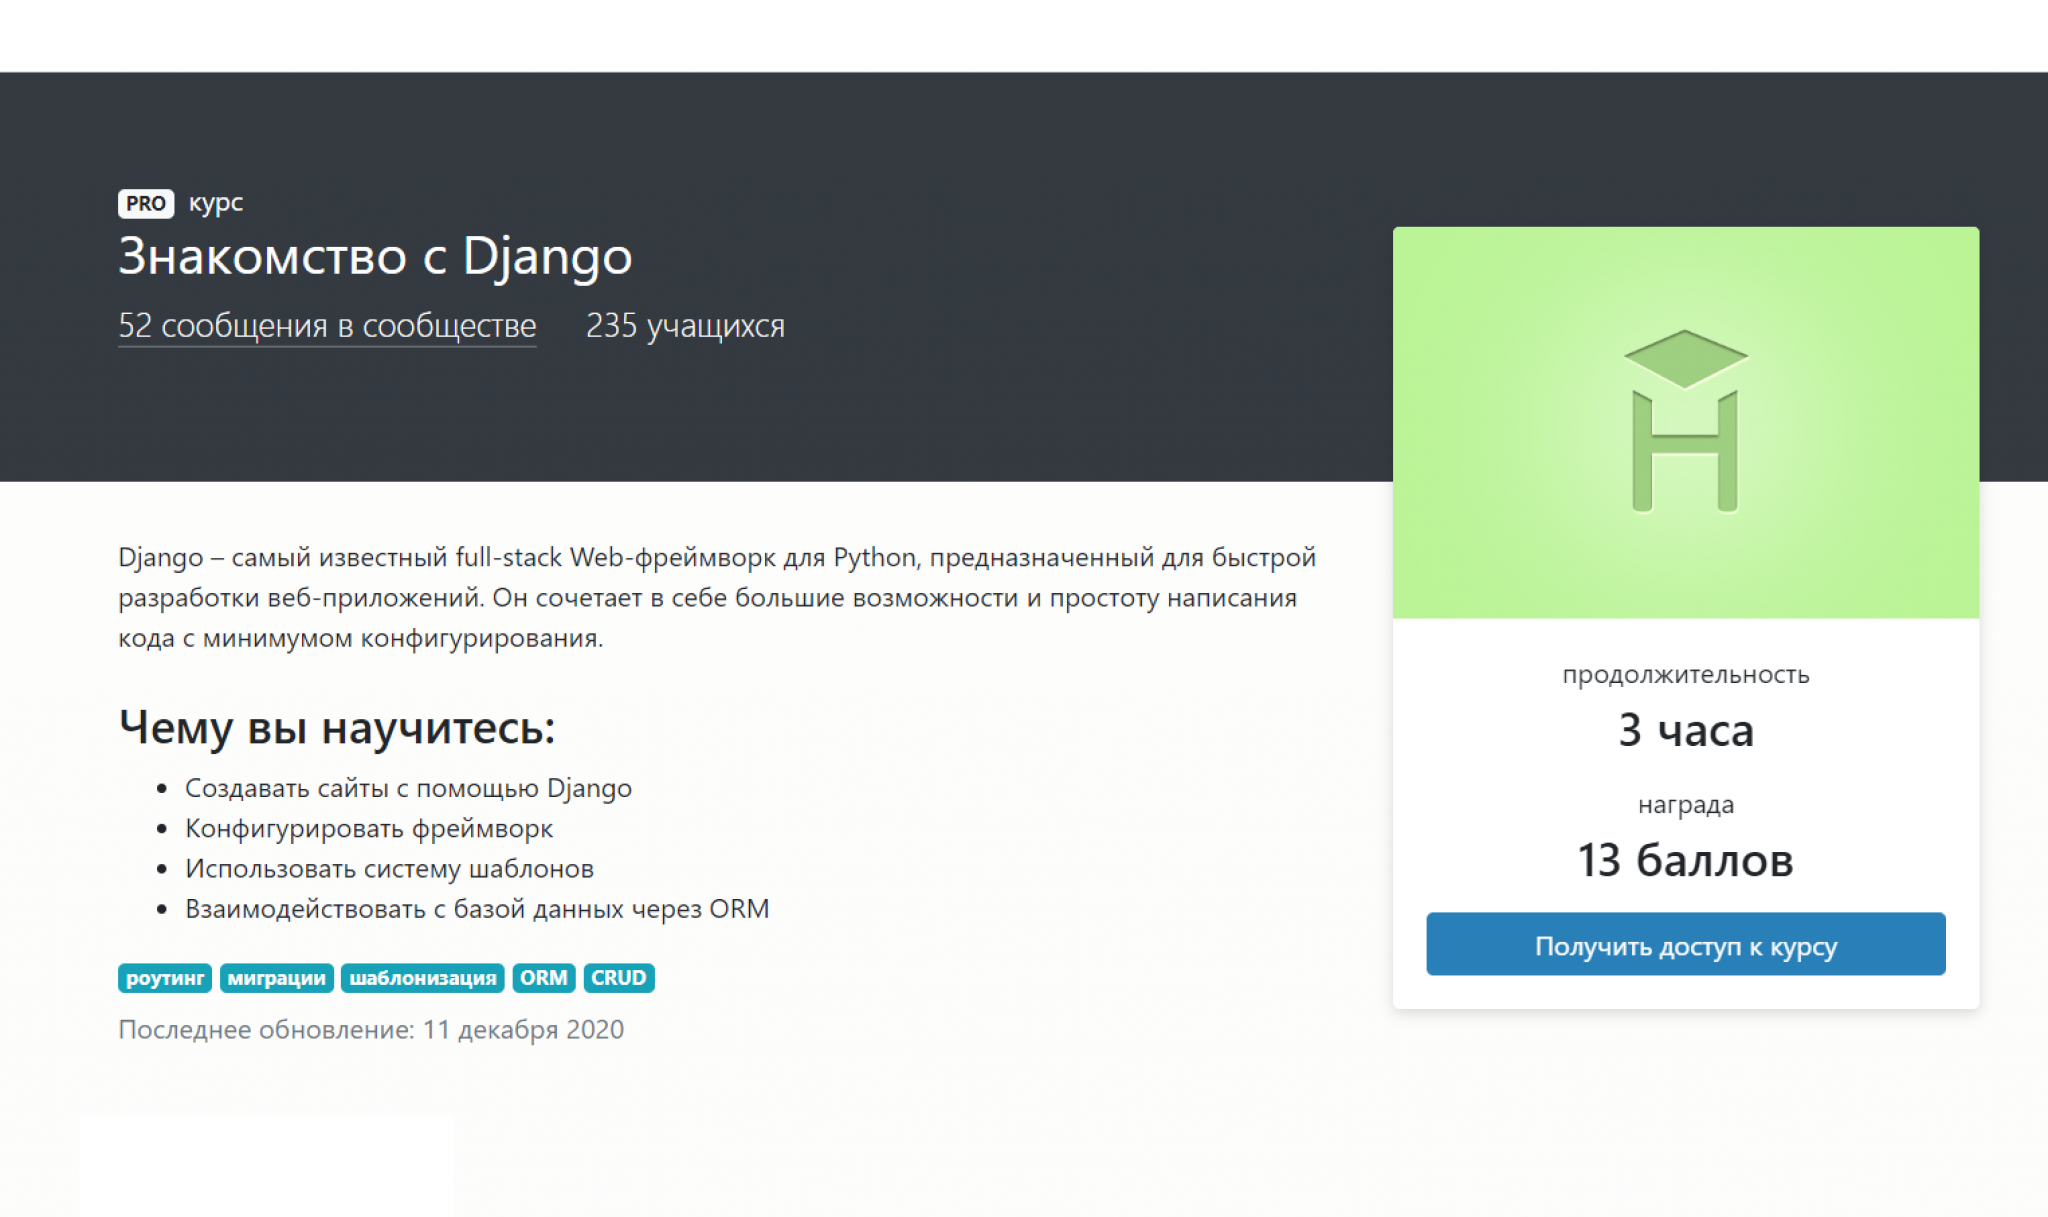 Руководство по django в visual studio, шаг 1: основы django | microsoft docs